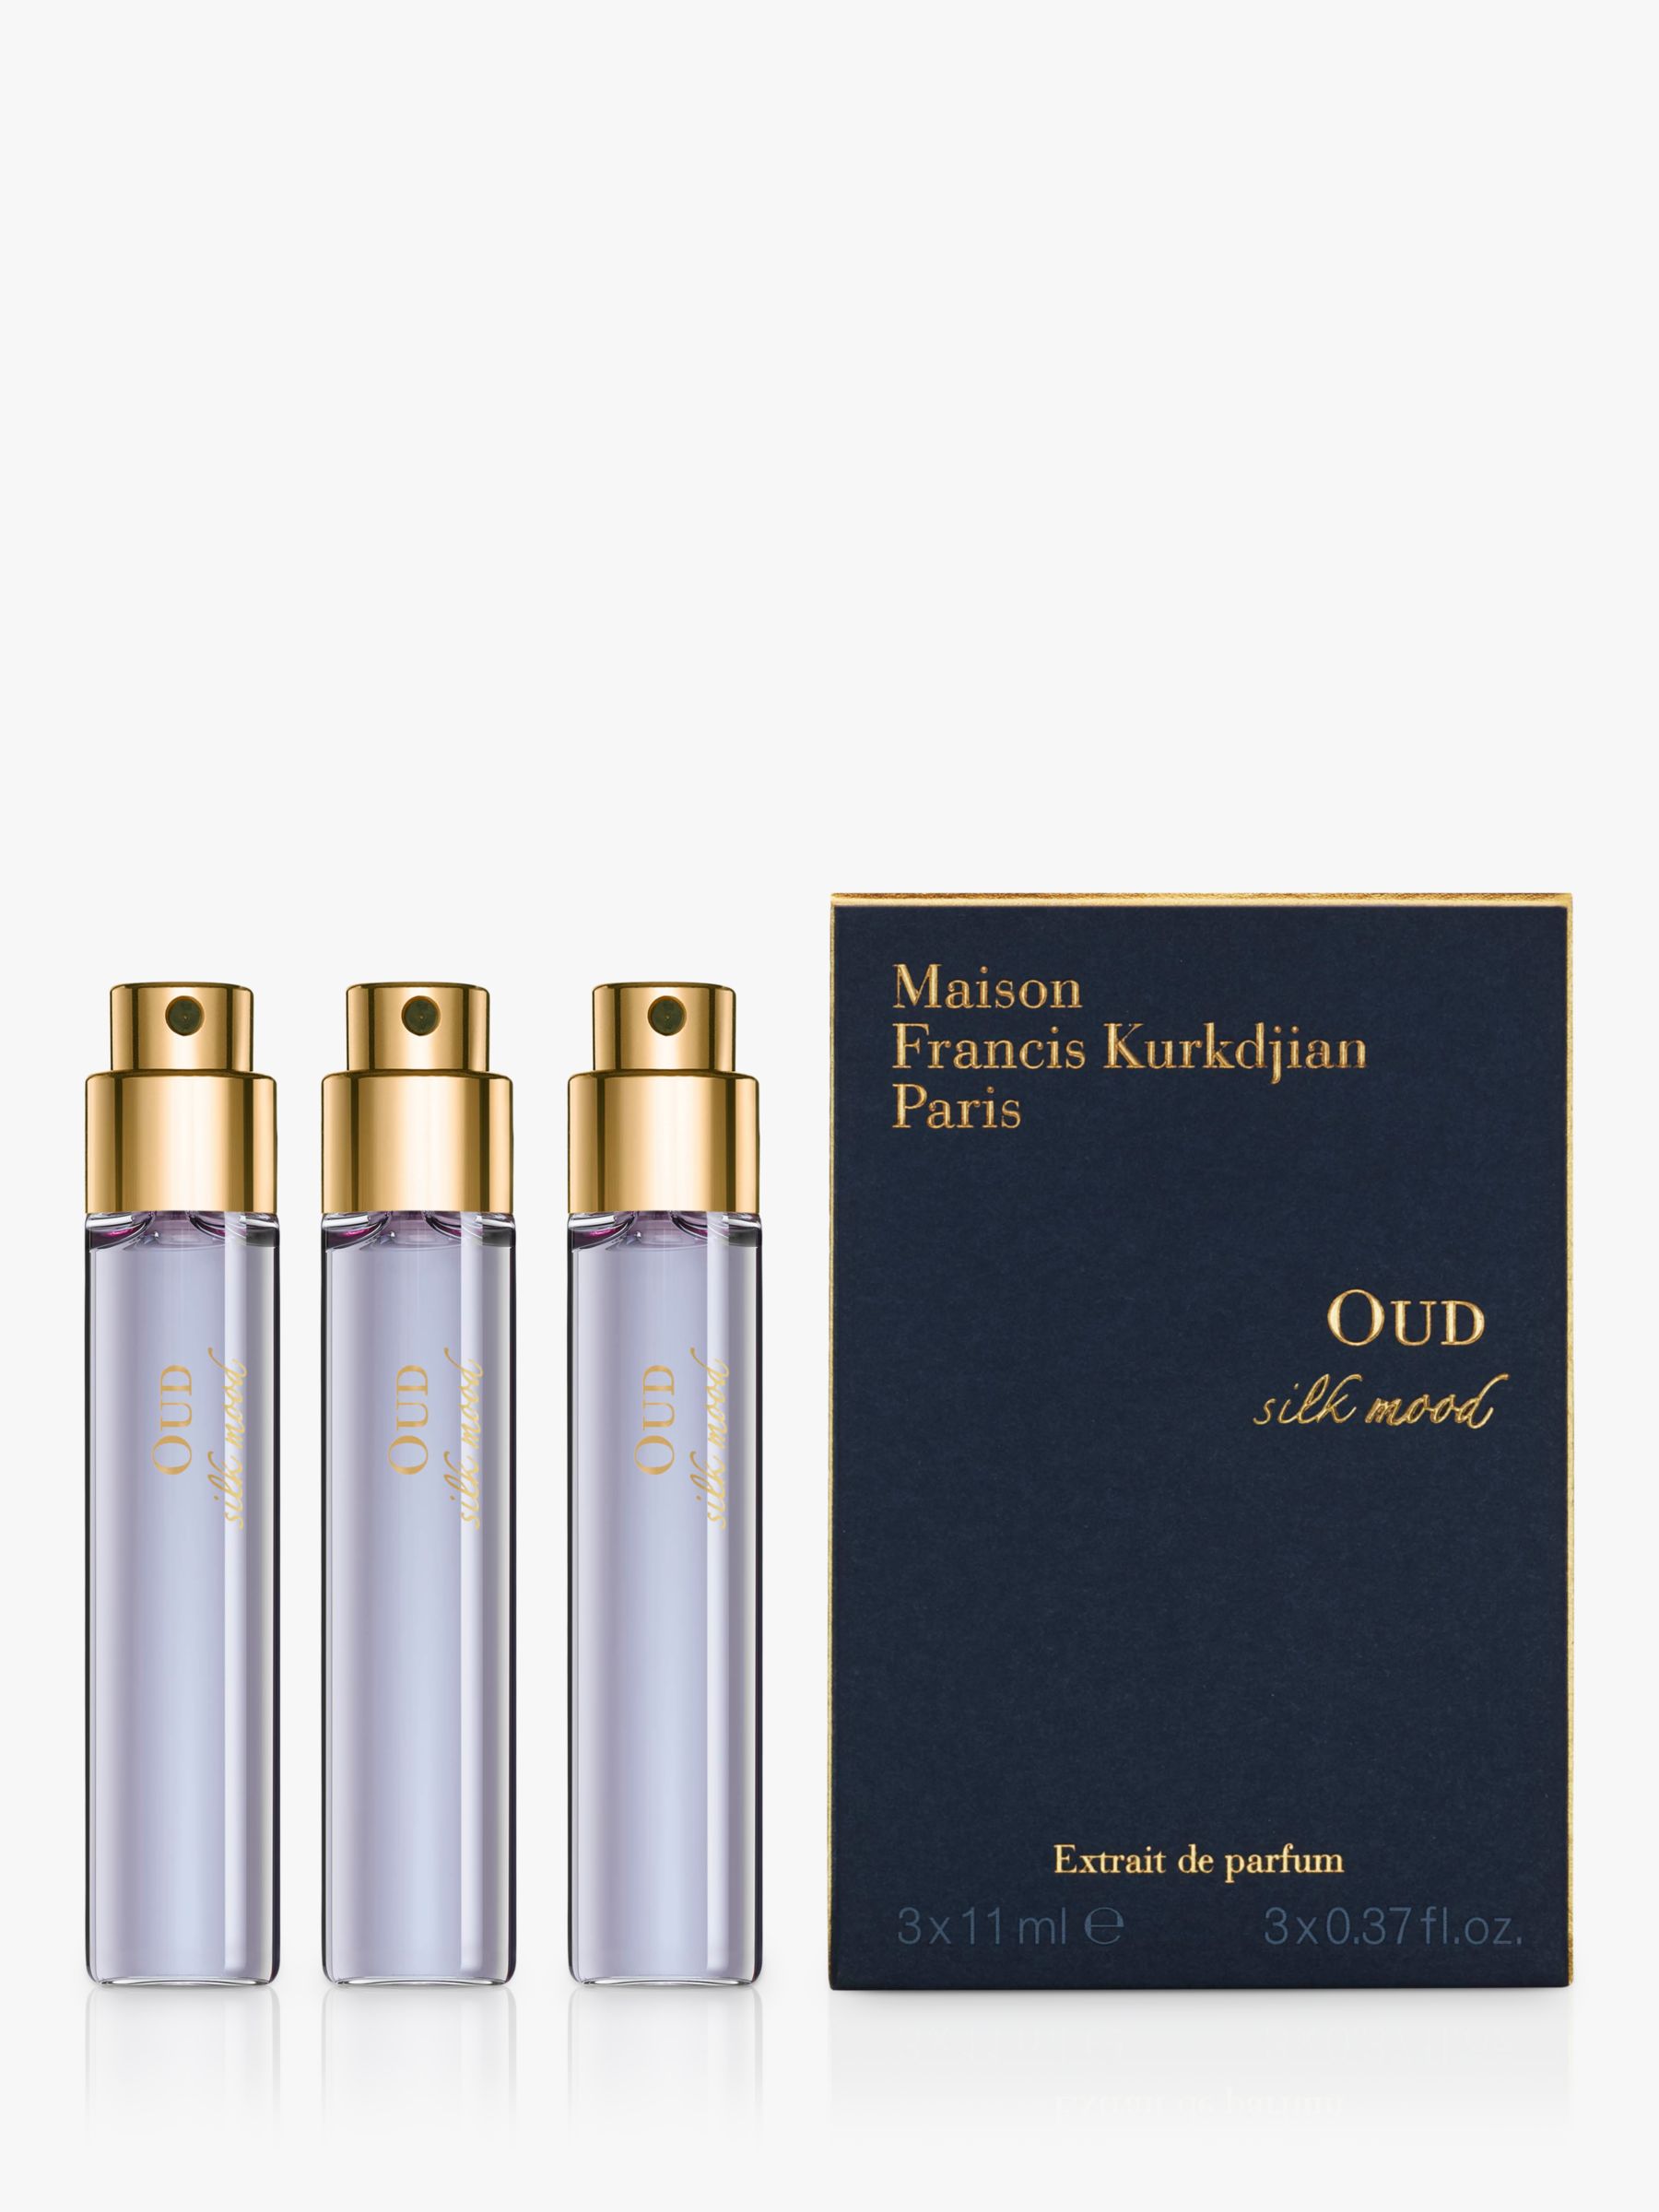 Maison Francis Kurkdjian Oud Silk Mood Extrait de Parfum Natural Spray Refills, 3 x 11ml 1